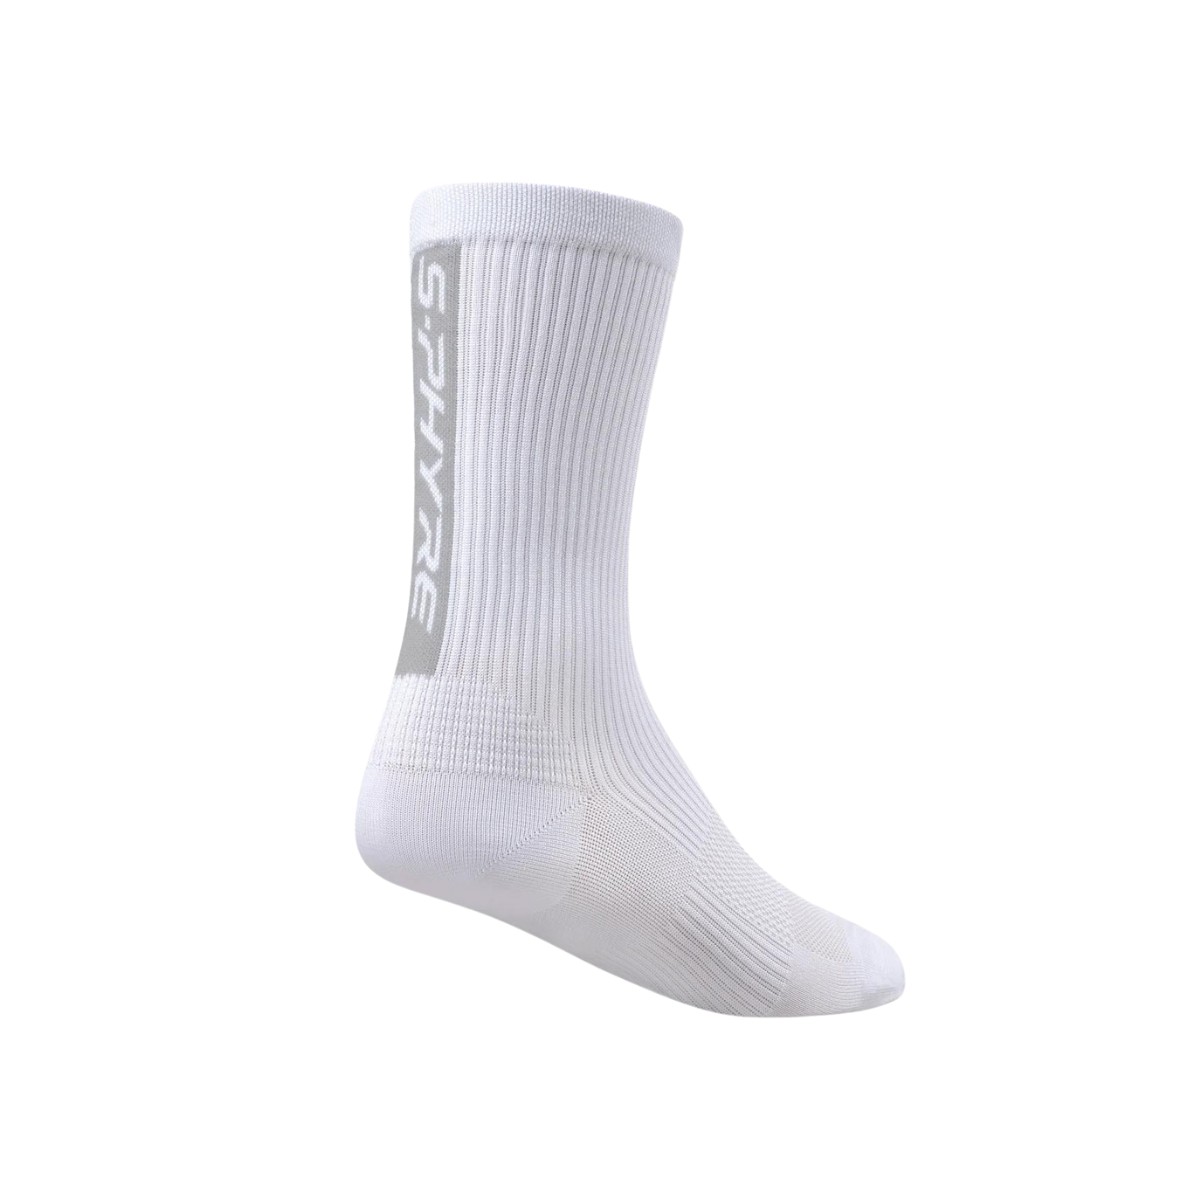 die Ecke günstig Kaufen-Shimano S-Phyre Flash Weiße Socken, Größe L/XL. Shimano S-Phyre Flash Weiße Socken, Größe L/XL <![CDATA[Shimano S-Phyre Flash Socken Entdecken Sie maximale Leistung mit den Shimano S-Phyre Flash Socken, die speziell für Hoch